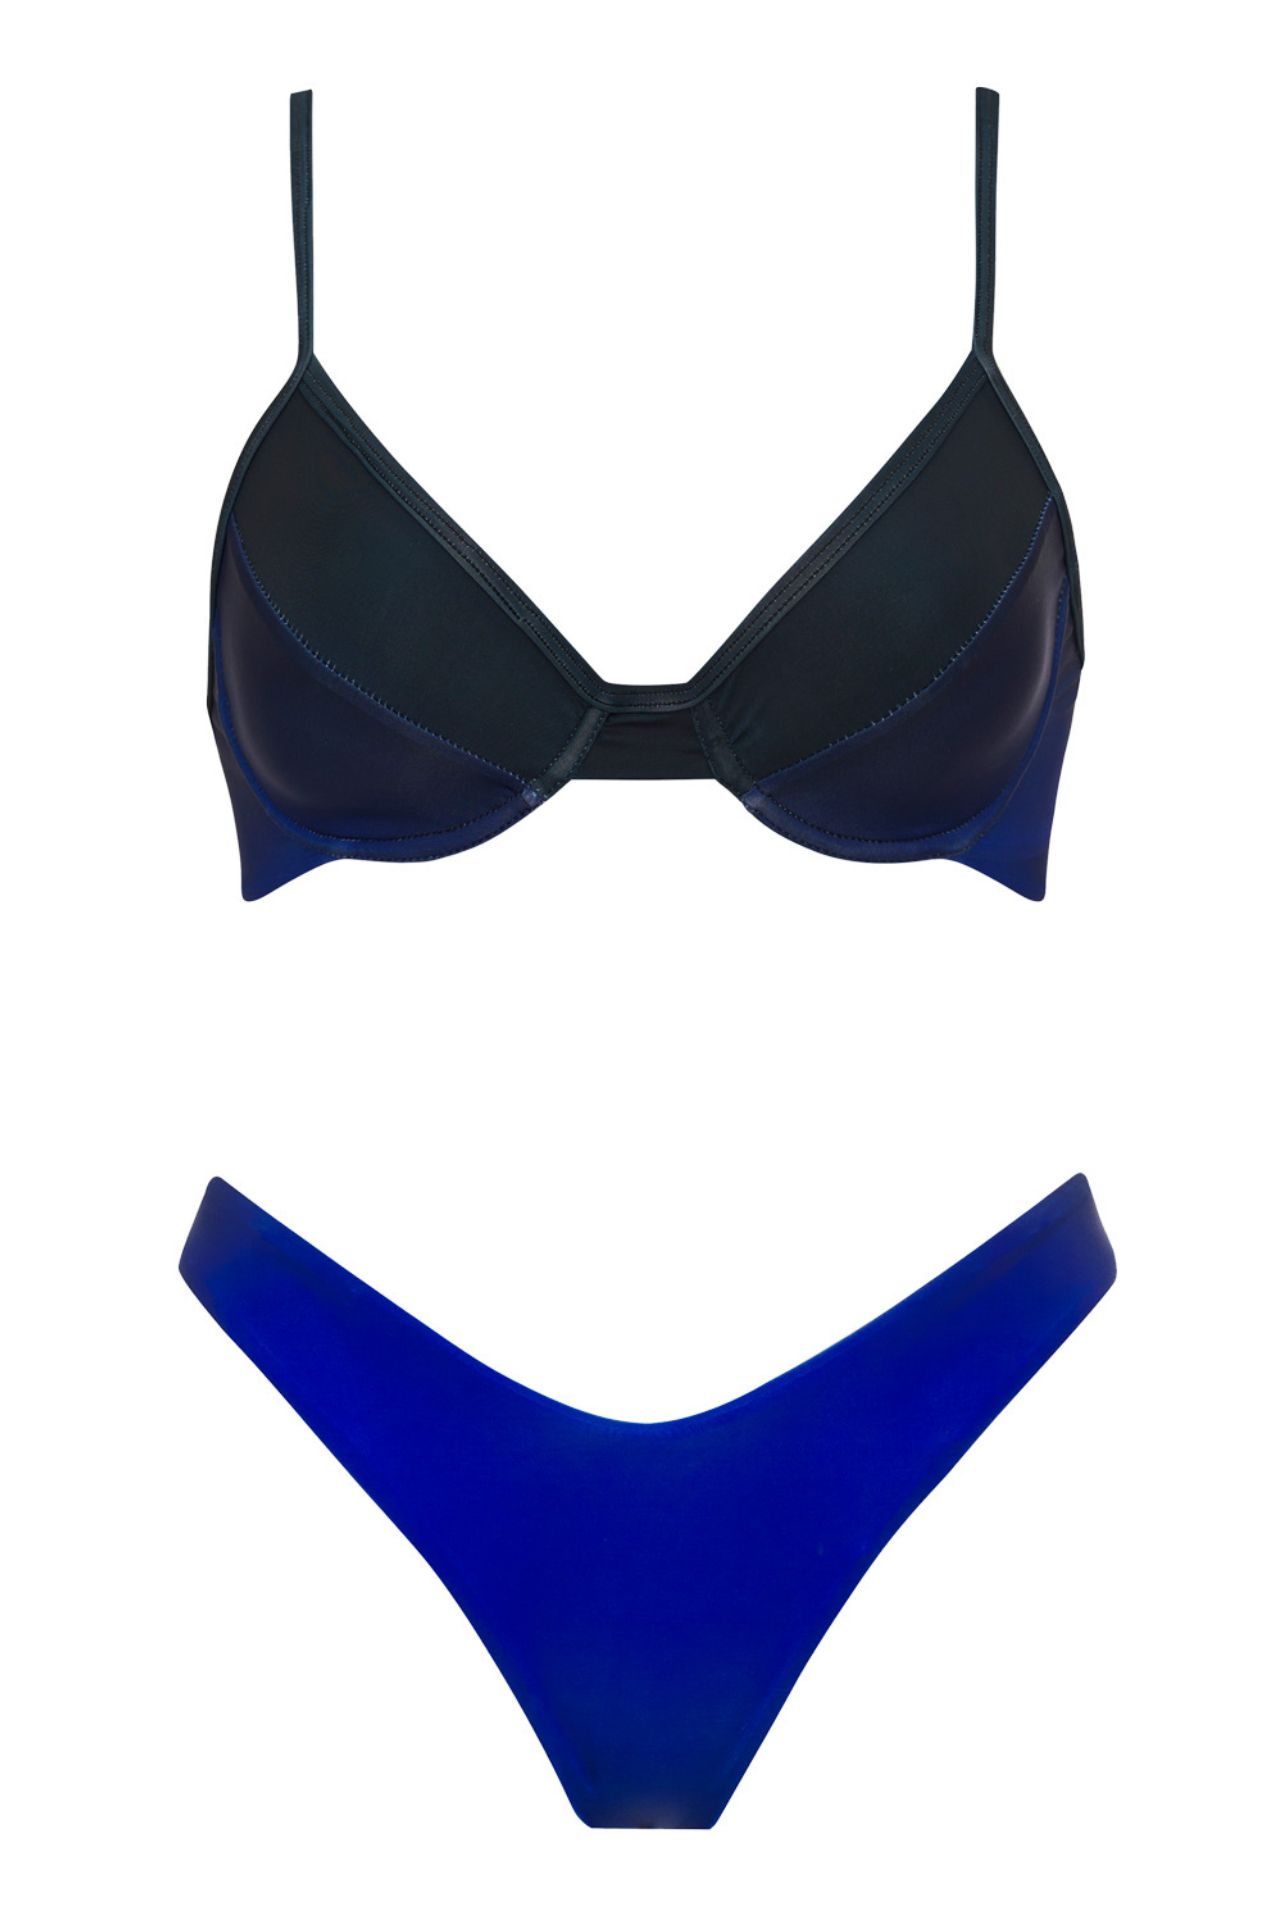 Nuestro Bikini Alexis Maverick cuenta con un top triangulo que es comodo y regulable. El bottoom regulable en la parte de adelante y atrás con pitas para amarrar a los costados.

- Material -

78% Nylon

22% Elastane




